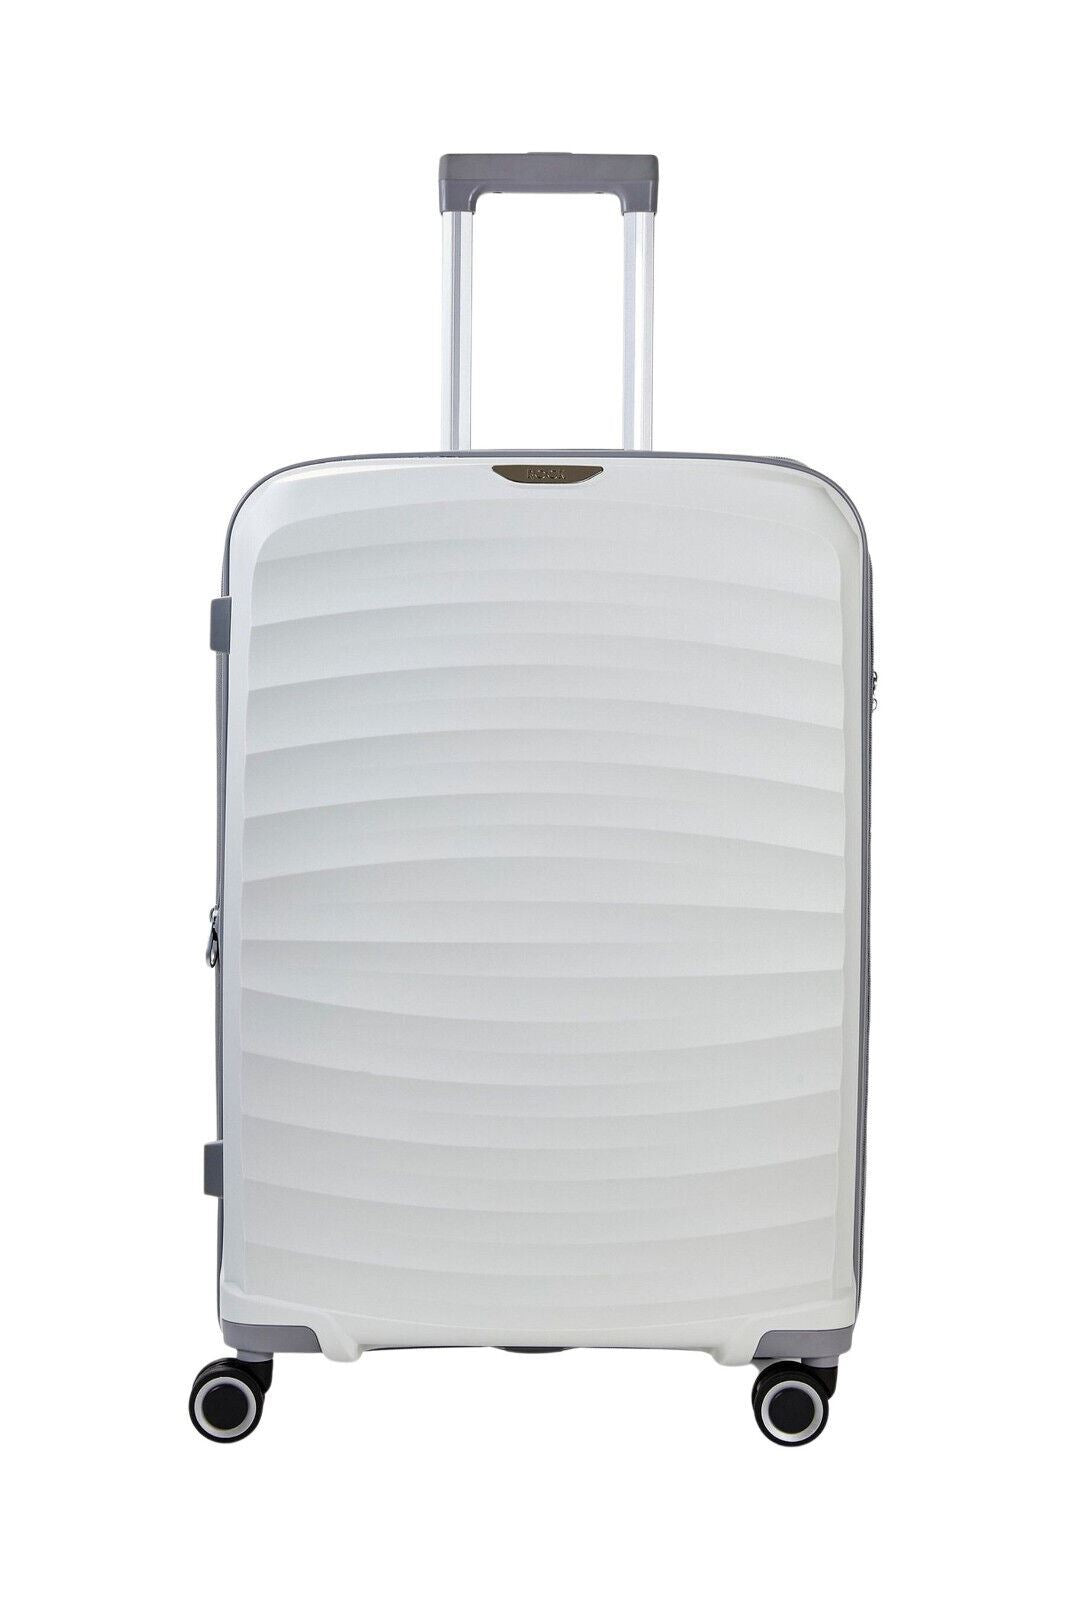 Sunwave Hard Shell Luggage Suitcase Set